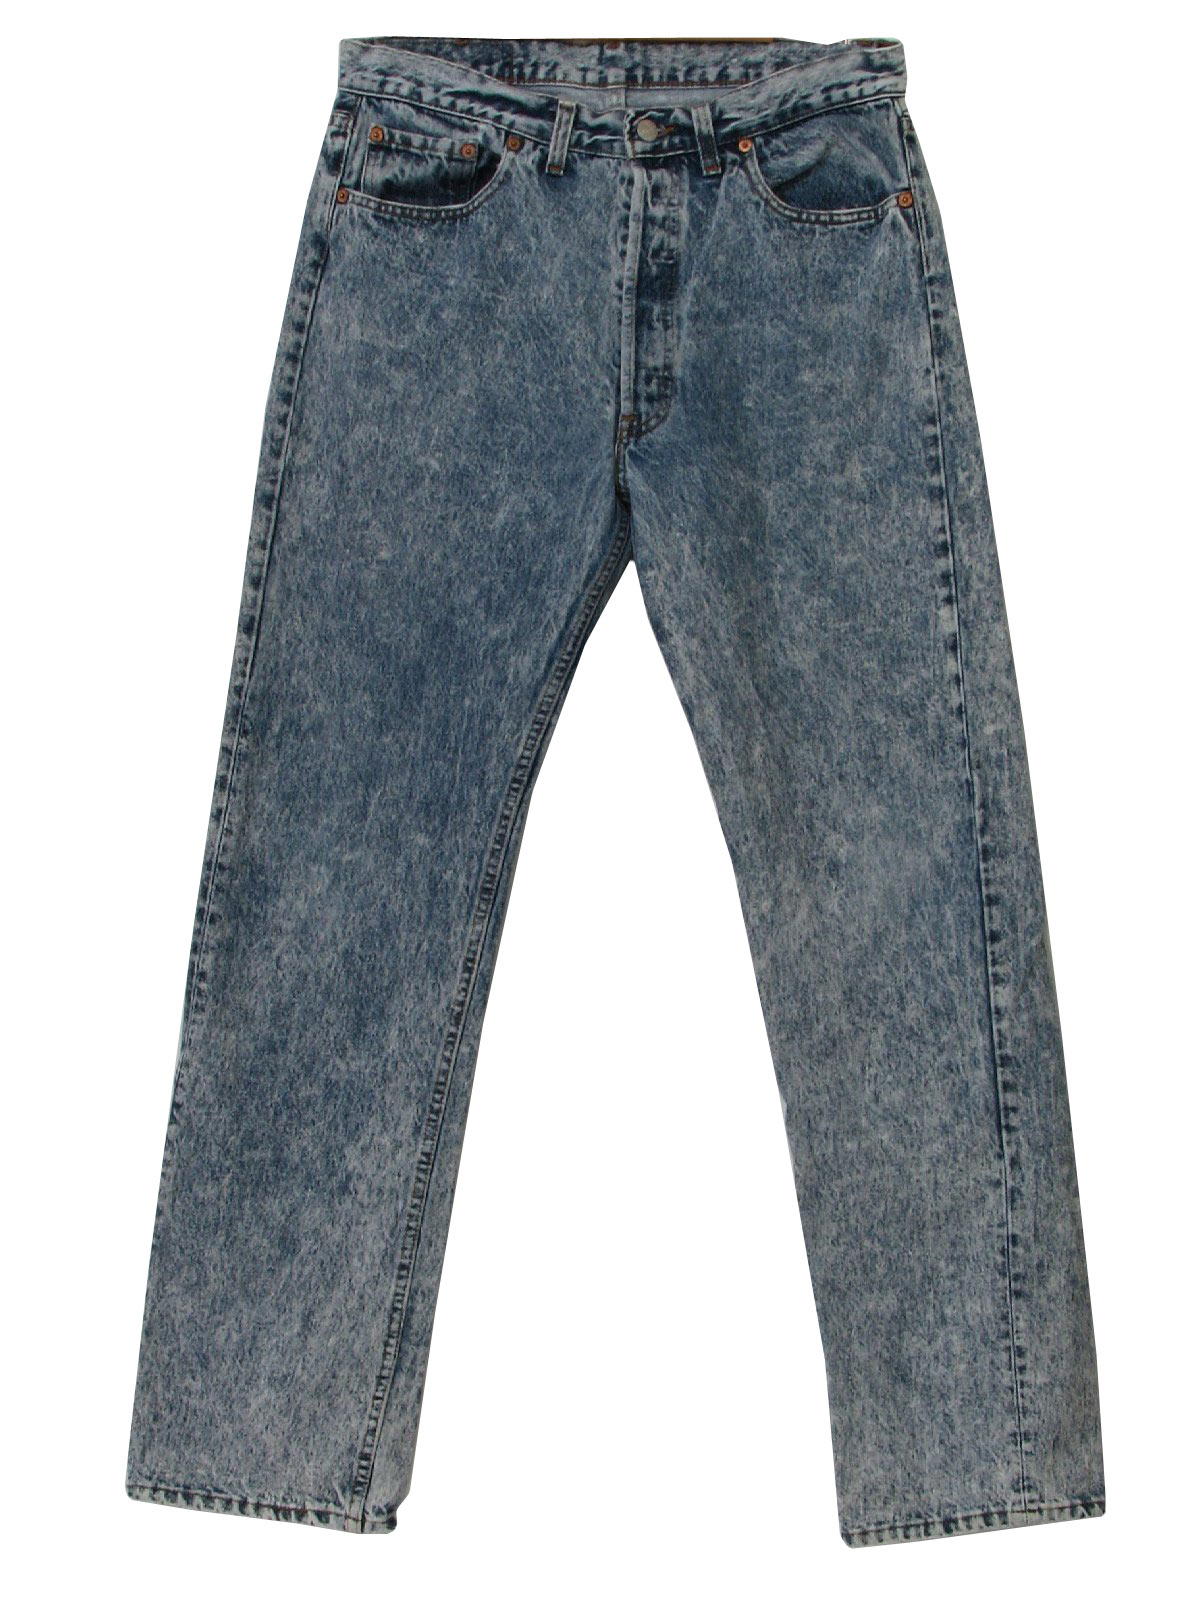 Levis Eighties Vintage Pants: 80s -Levis- Mens blue acid washed cotton ...